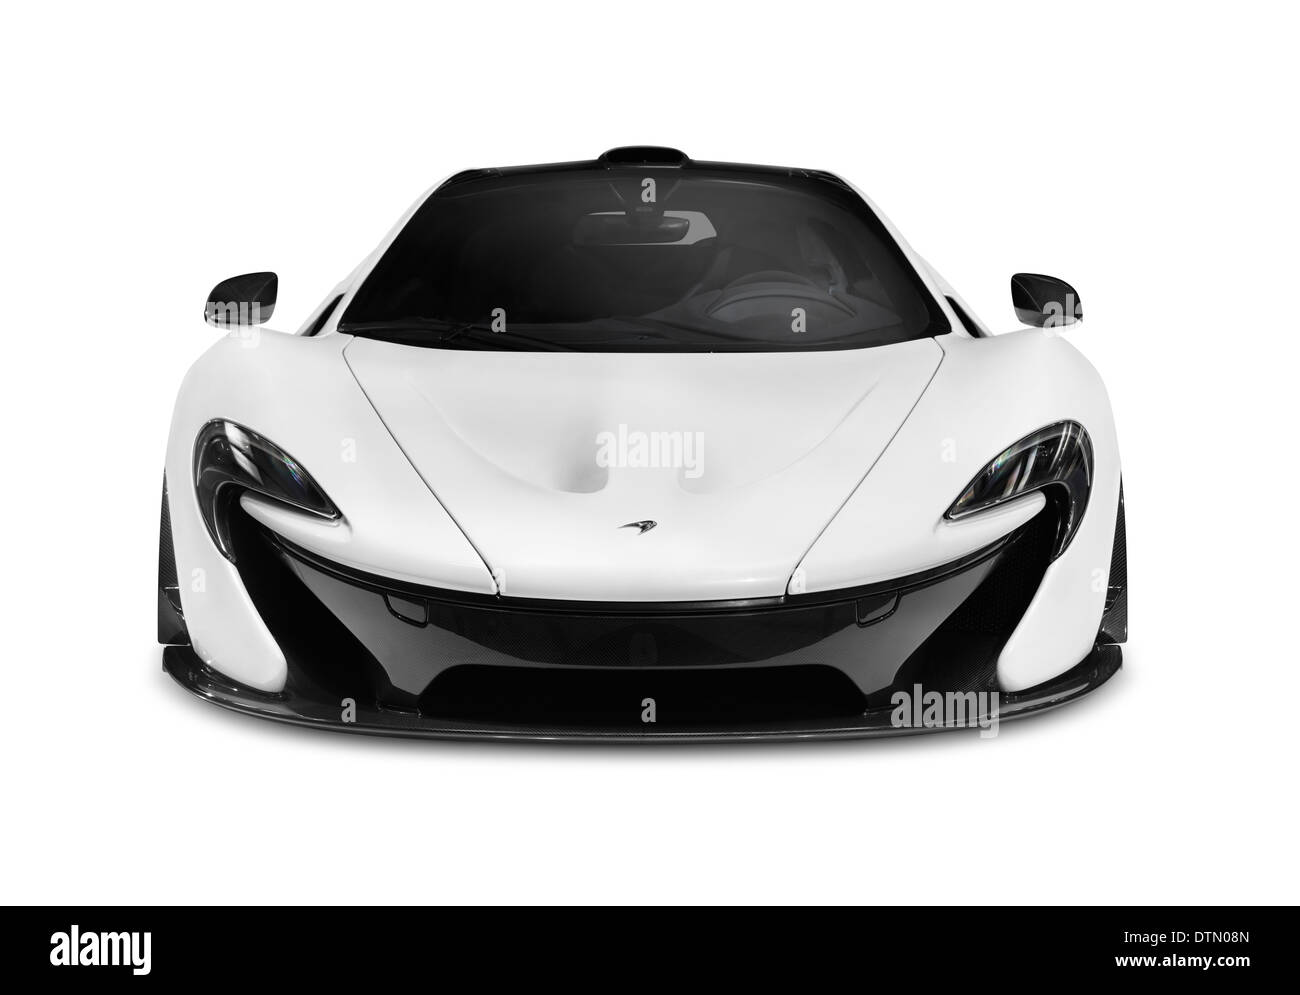 Licencia e impresiones en MaximImages.com - McLaren coche deportivo de lujo, supercoche, foto de archivo de automoción. Foto de stock